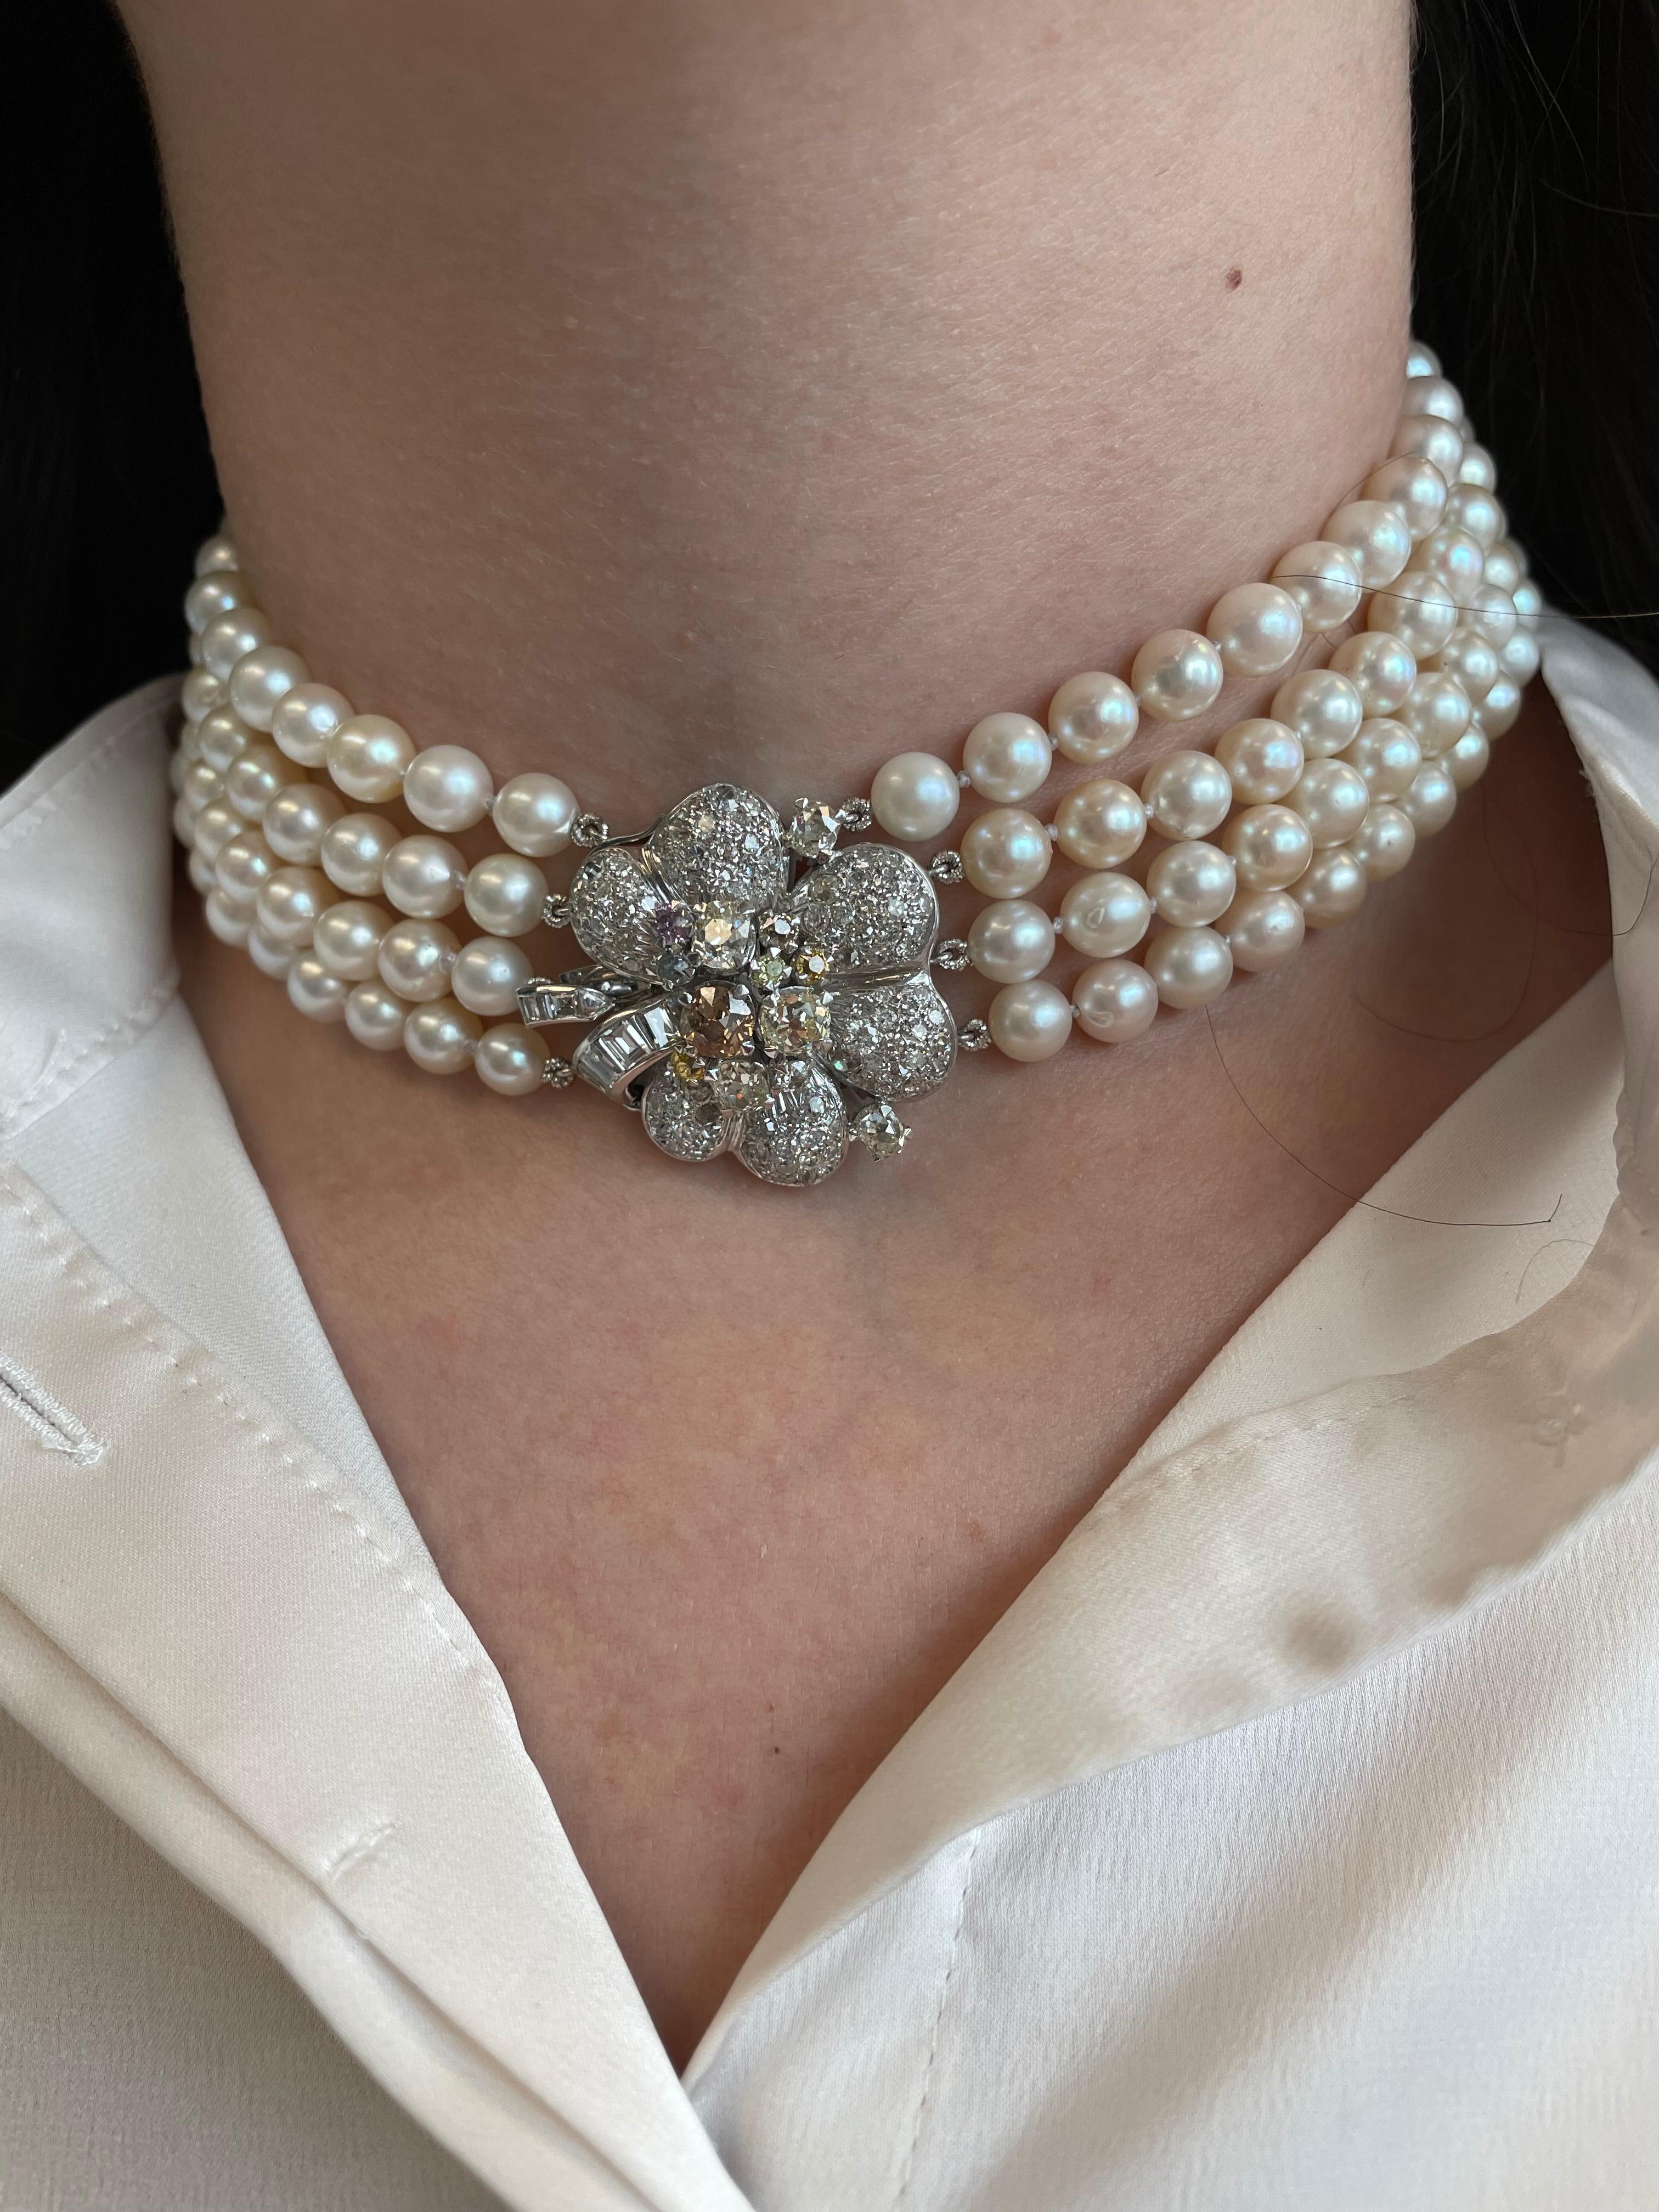 Wunderschöne Perle  mit floralem Halsband mit Diamantmuster.
Ungefähr 7,80 Karat farbige und farblose Diamanten. Weiße Diamanten von ungefährer Farbe G/H und Reinheit VS2/SI1. 18 Karat Weißgold.
*Unbestimmt, ob die Farbdiamanten behandelt werden